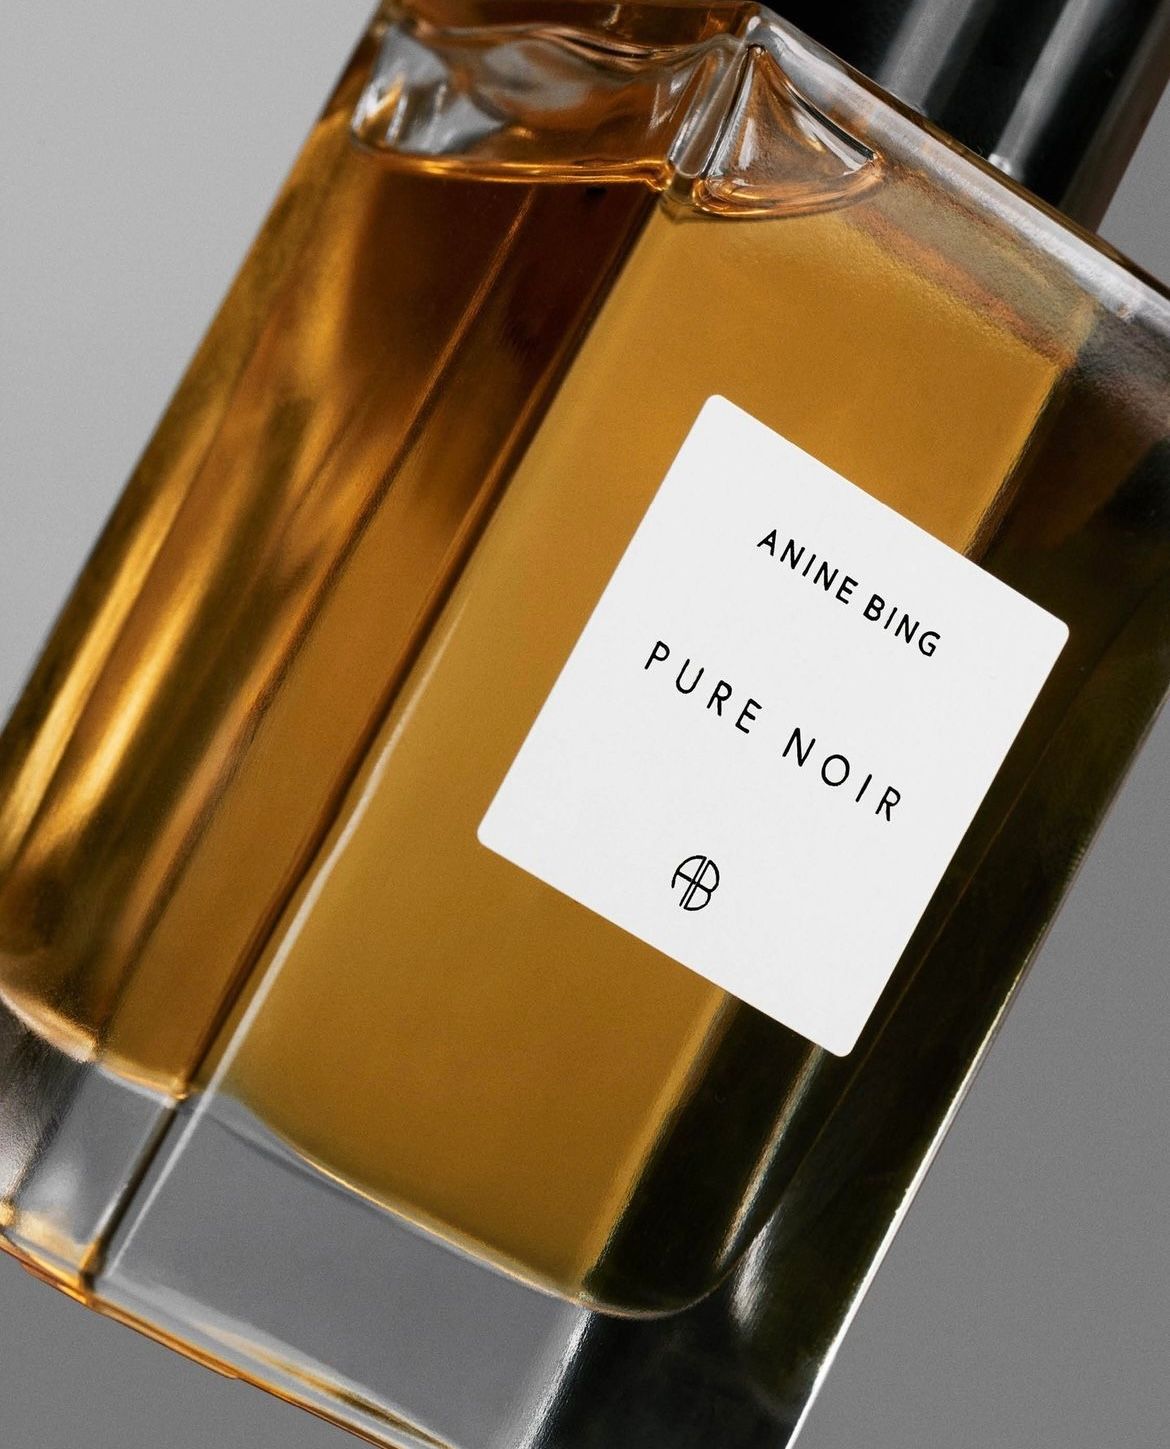 Anine Bing, Pure Noir Eau De Parfum